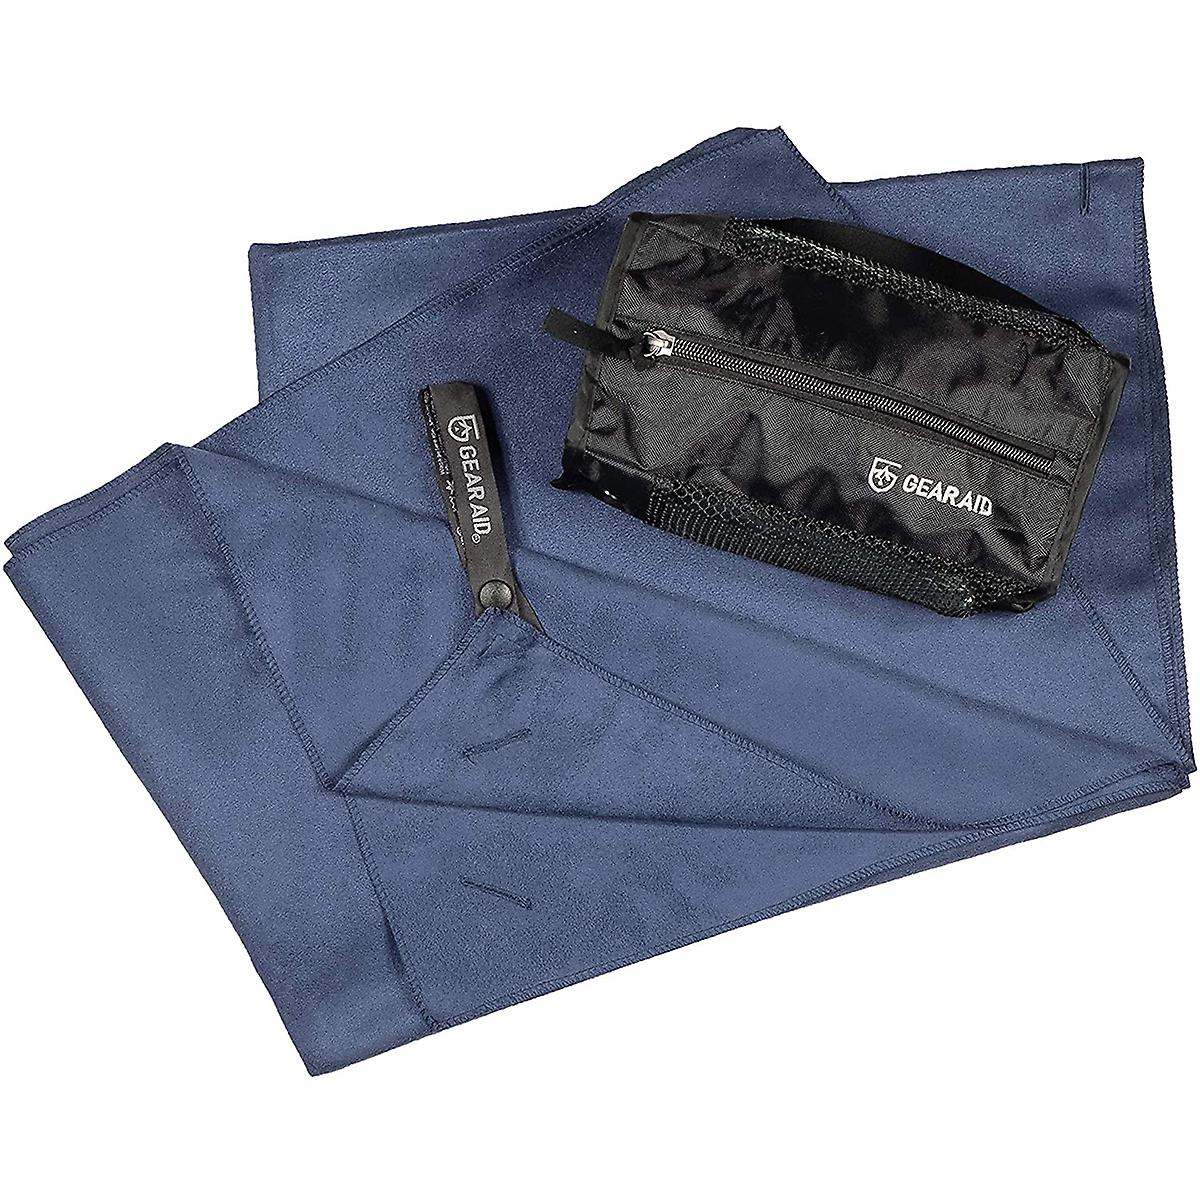 Aide à l'équipement: serviette à serviette microfibre Navy- xlarge